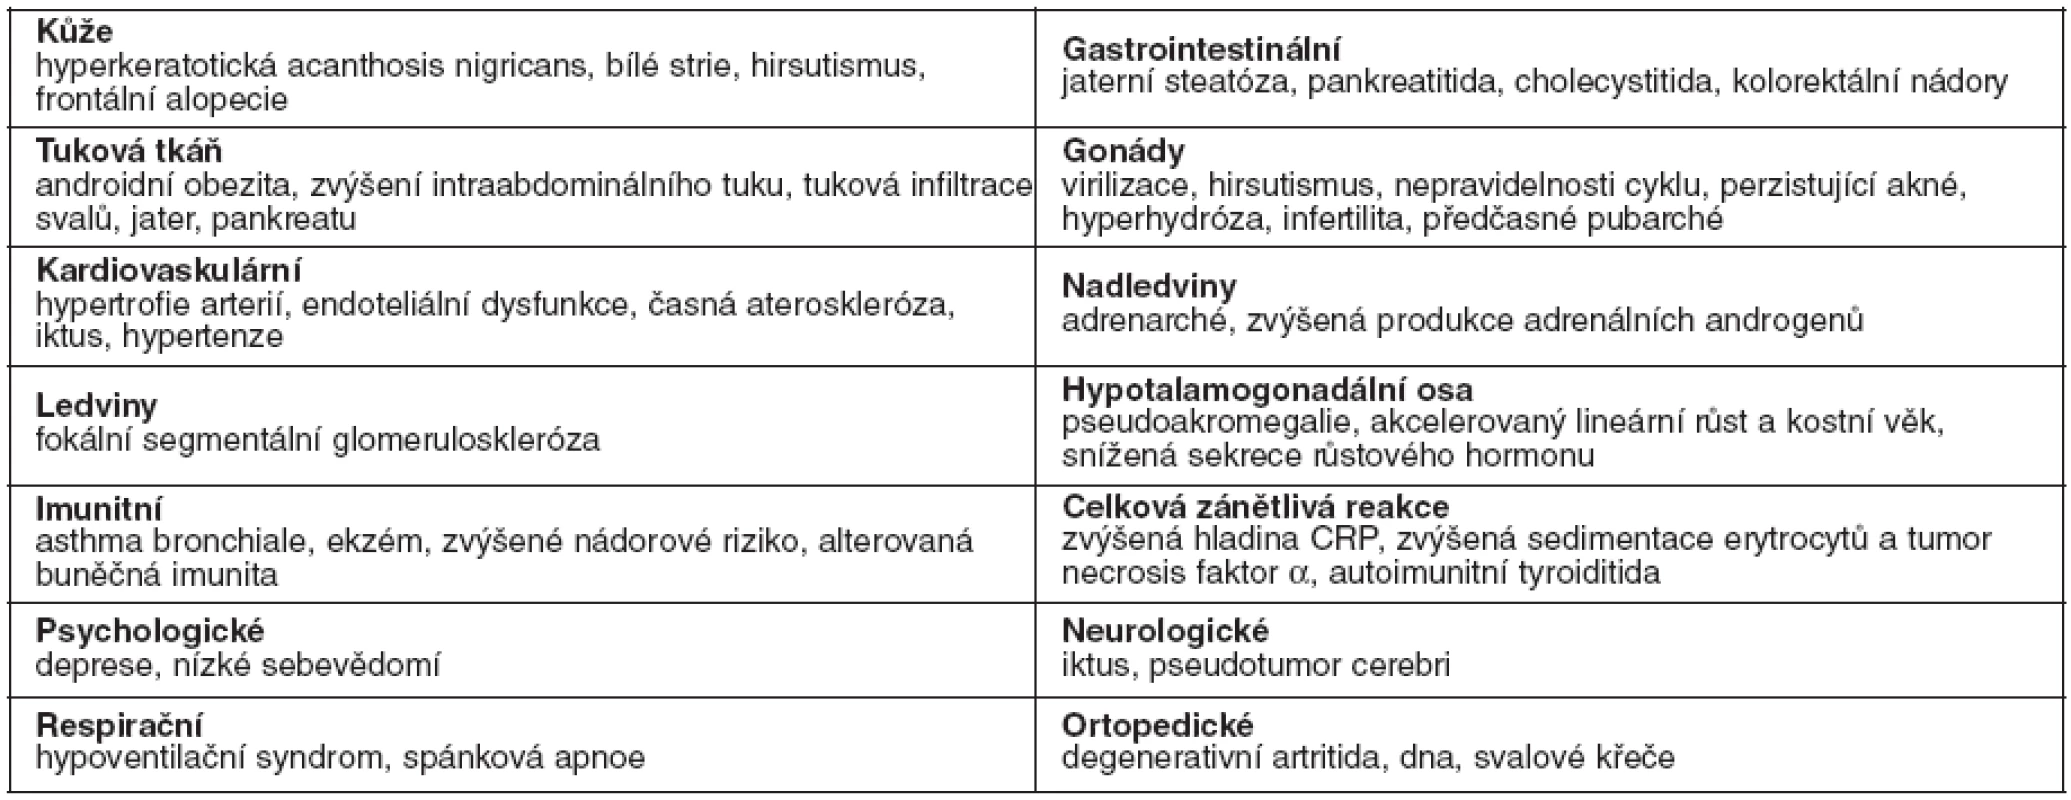 Orgánově specifické symptomy spojené s hyperinzulinismem a inzulínovou rezistencí